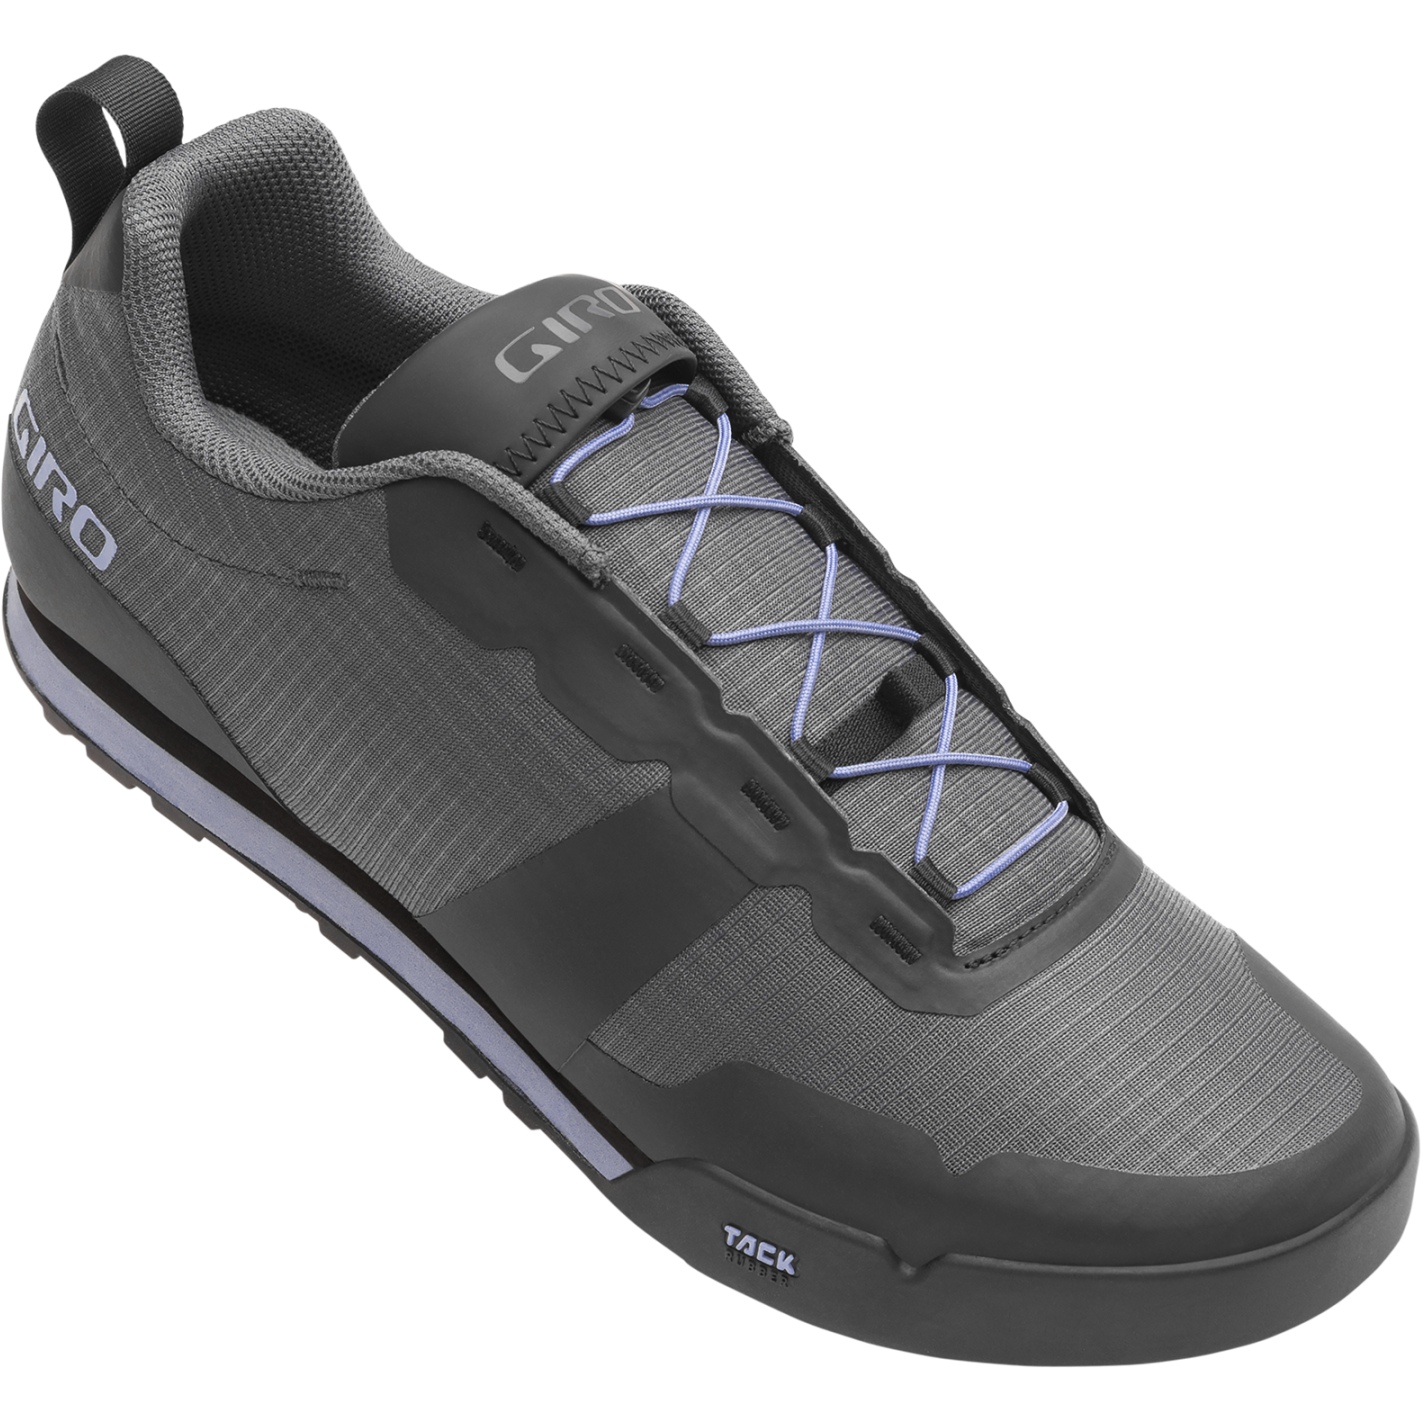 Produktbild von Giro Tracker Fastlace Flatpedal Schuhe Damen - dark shadow/lavender grey